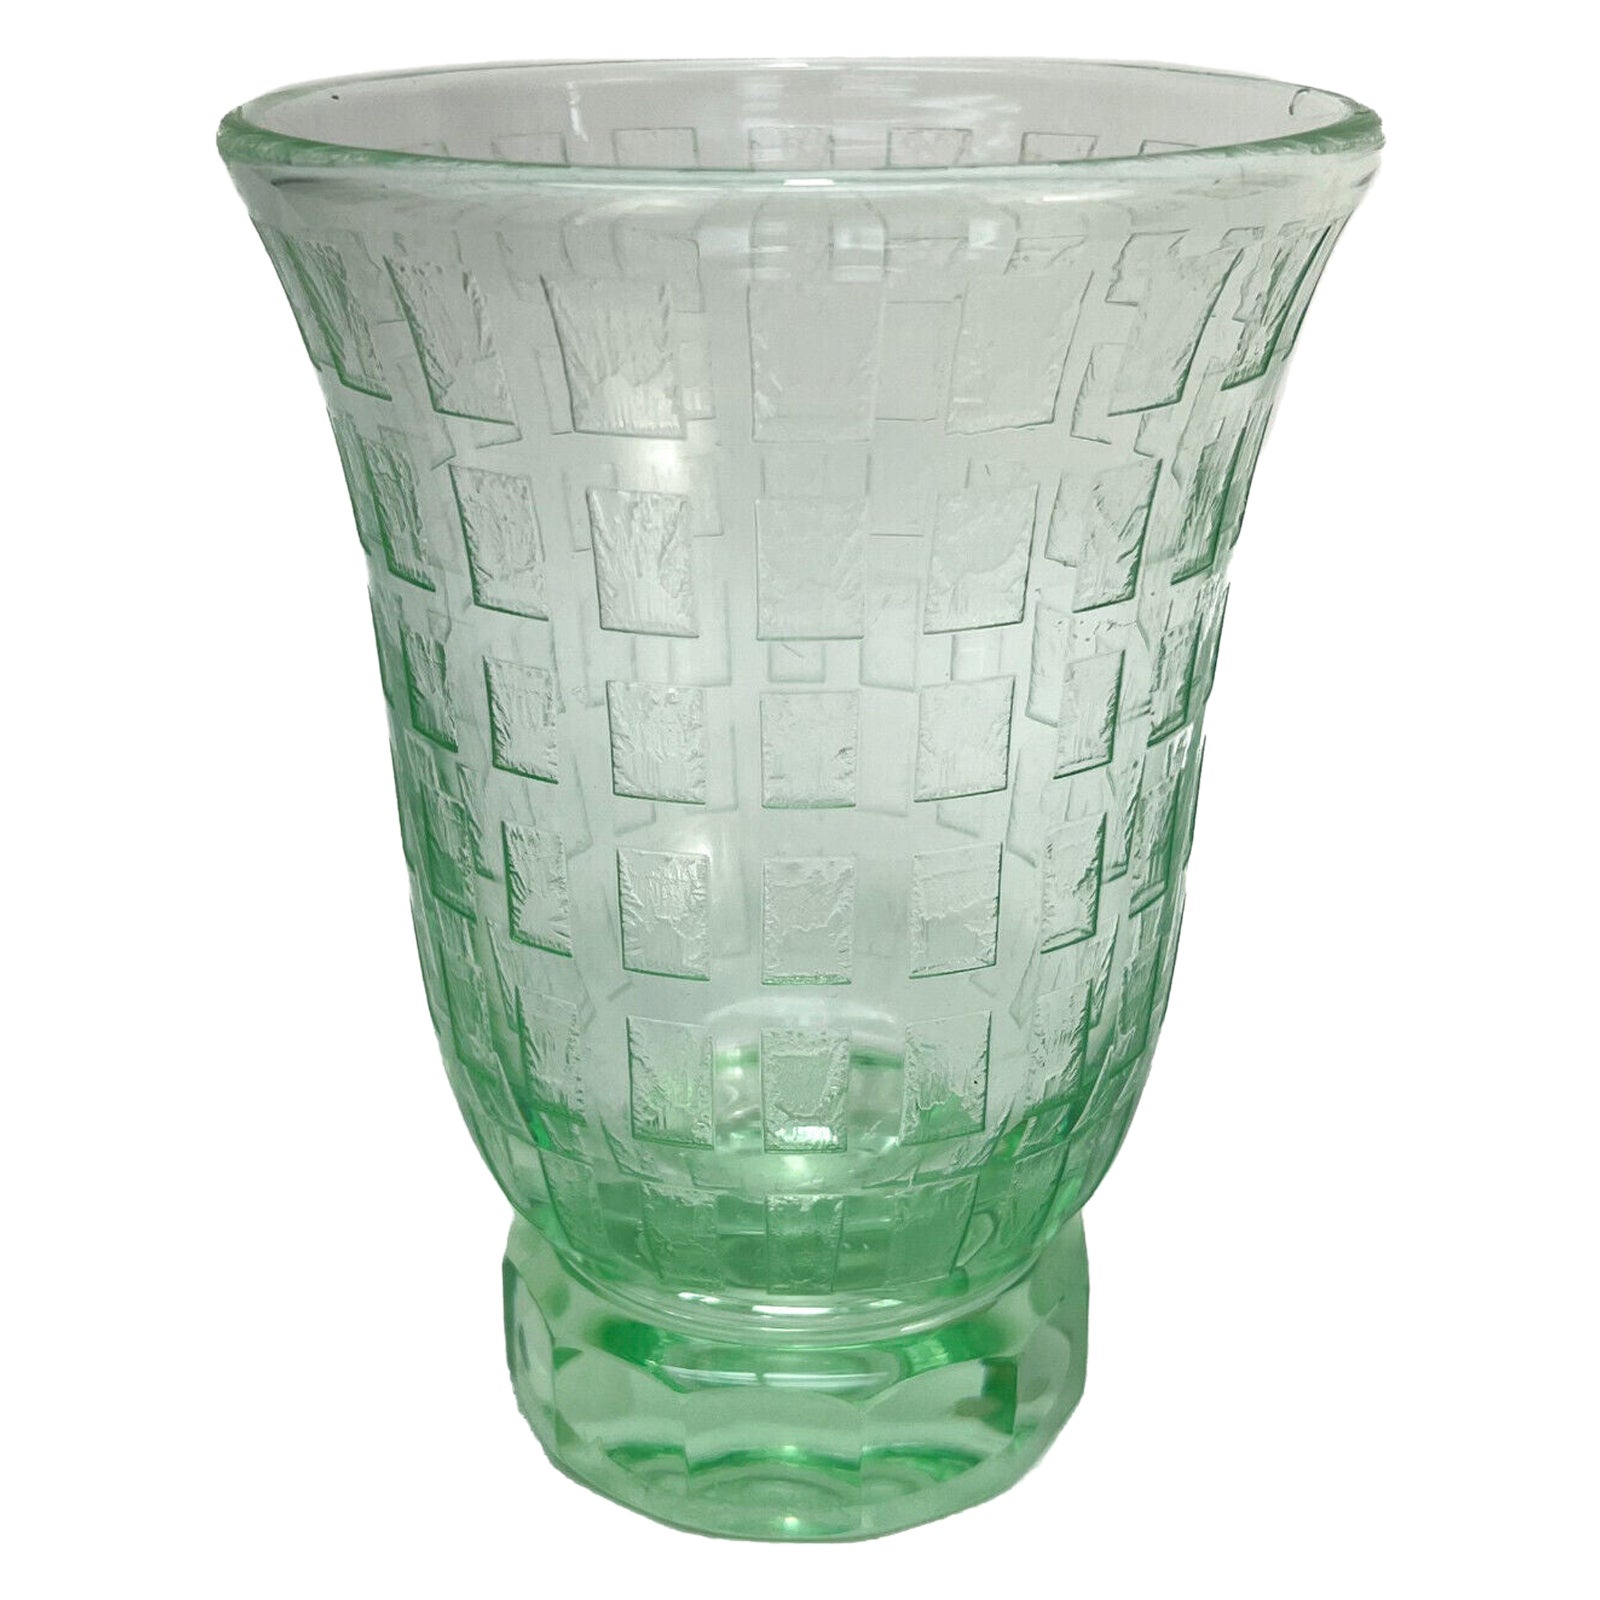 Vase sur pied en verre d'art vert gravé à l'acide, signé Daum Nancy France